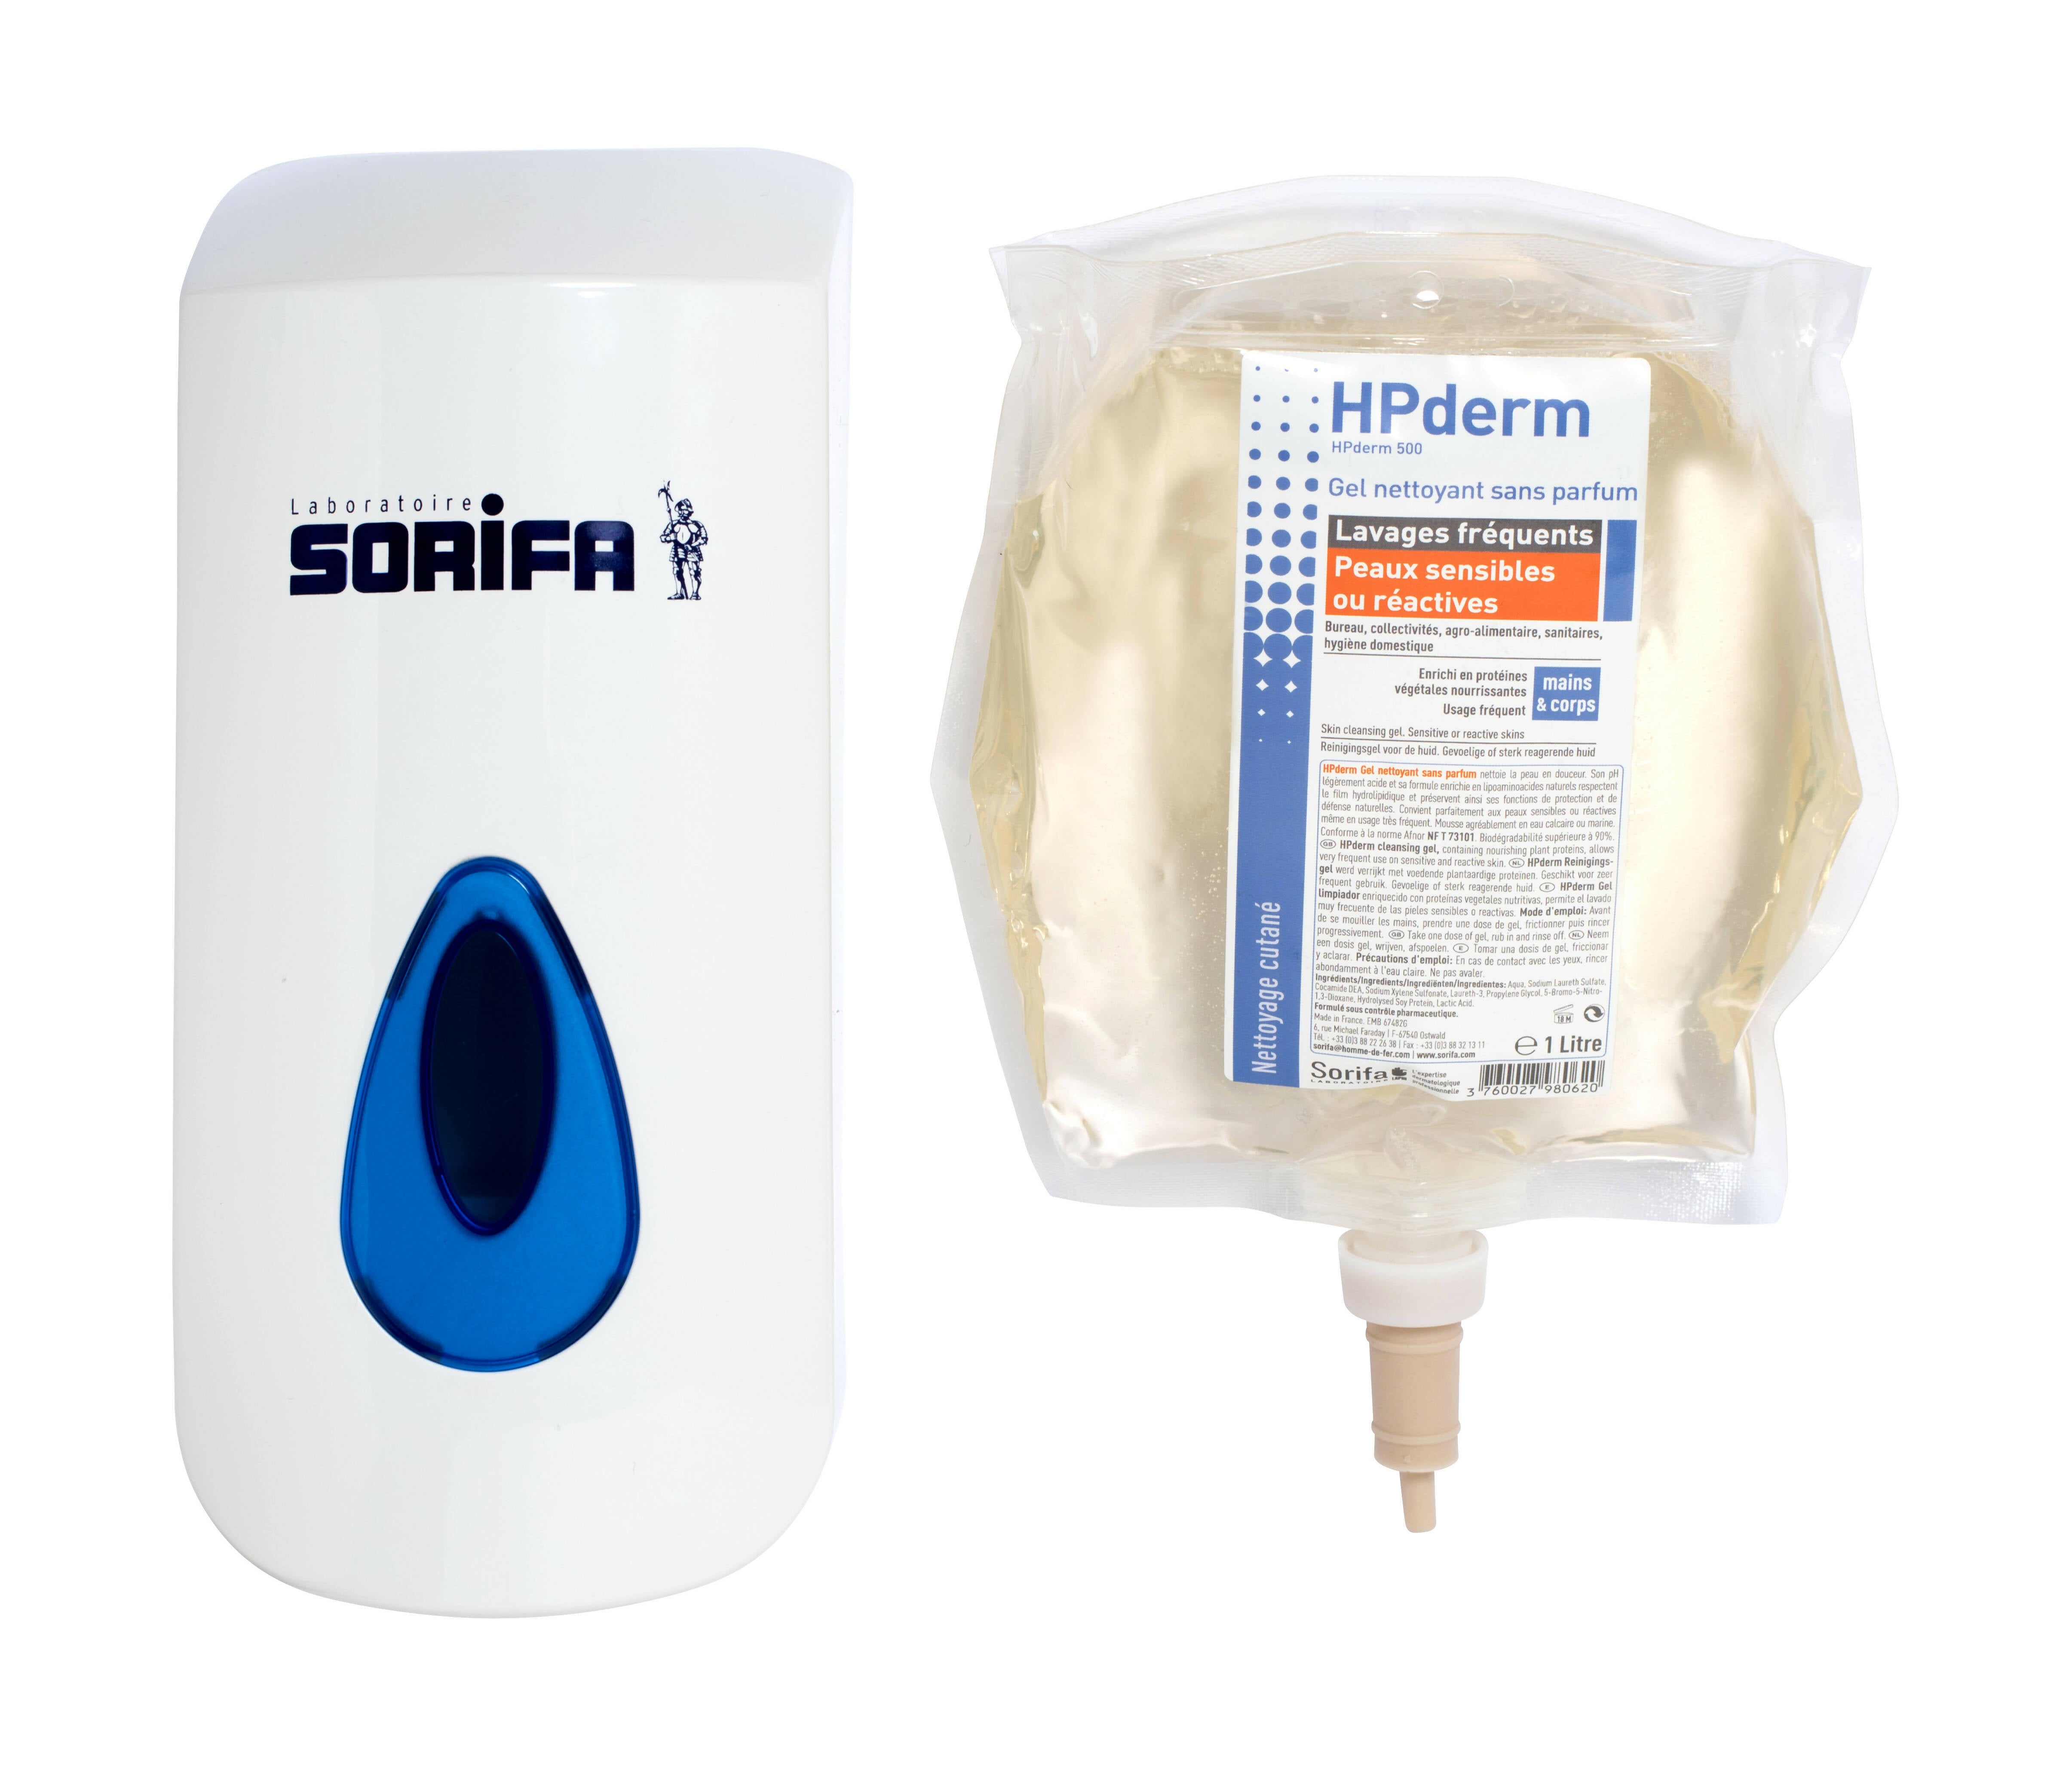 SORIFA - HPderm parfümfreies Reinigungsgel - Häufiges Waschen - Empfindliche oder reaktive Haut - Hände und Körper - Mit schützenden Sojaproteinen - Neutraler pH-Wert, seifenfrei - 800-ml-Beutel